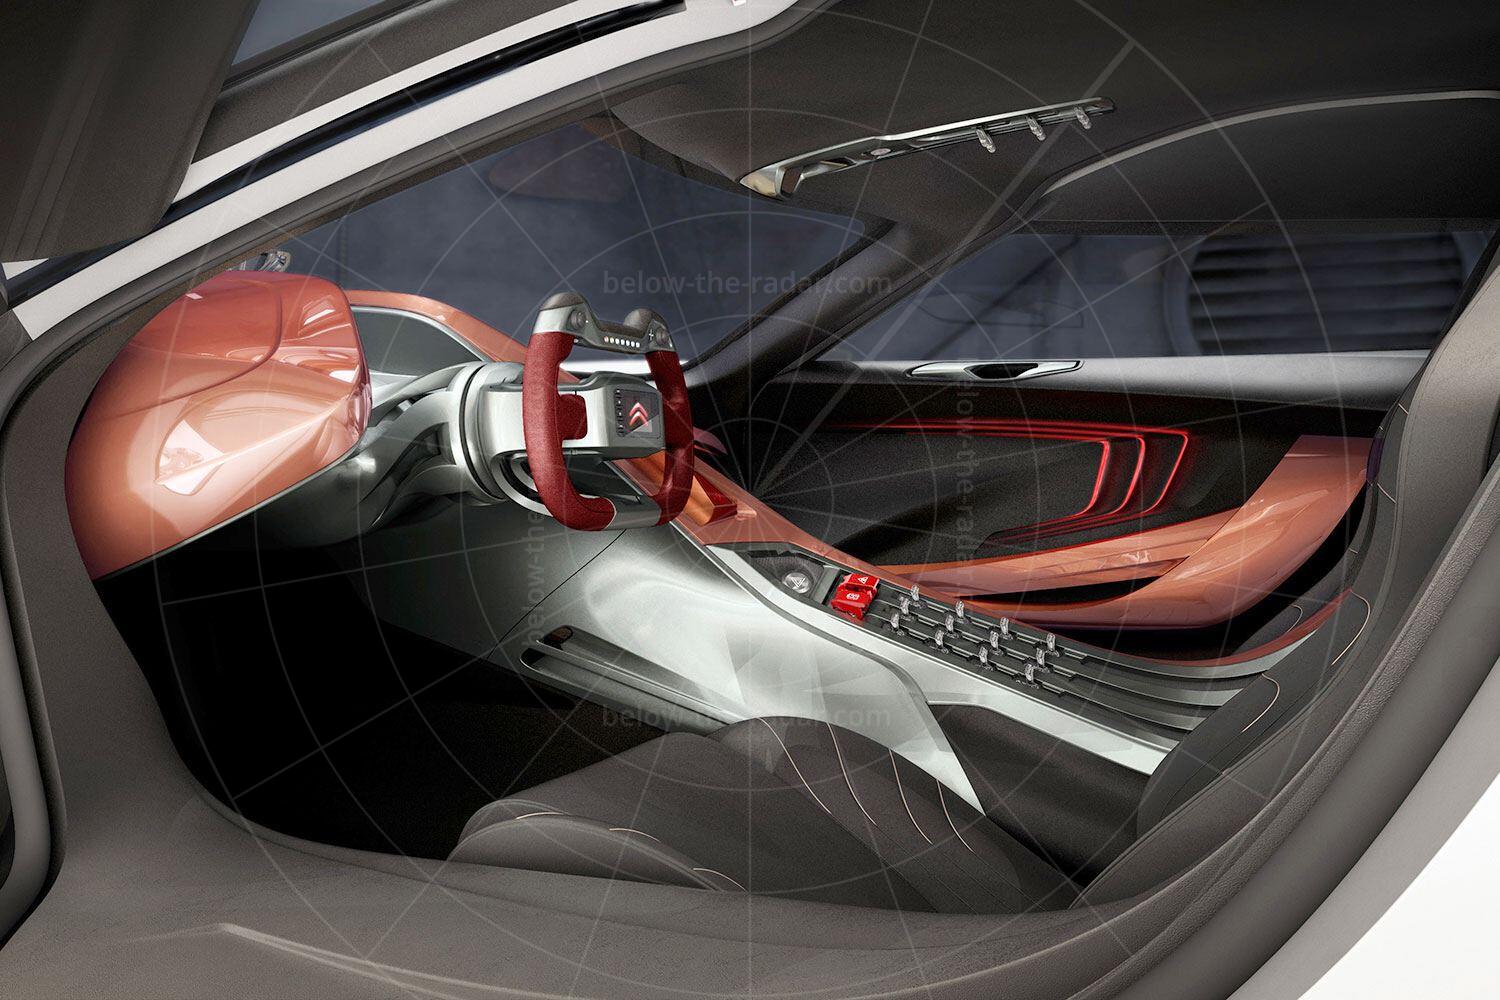 Citroen GT concept interior Pic: Citroen | Citroen GT concept interior